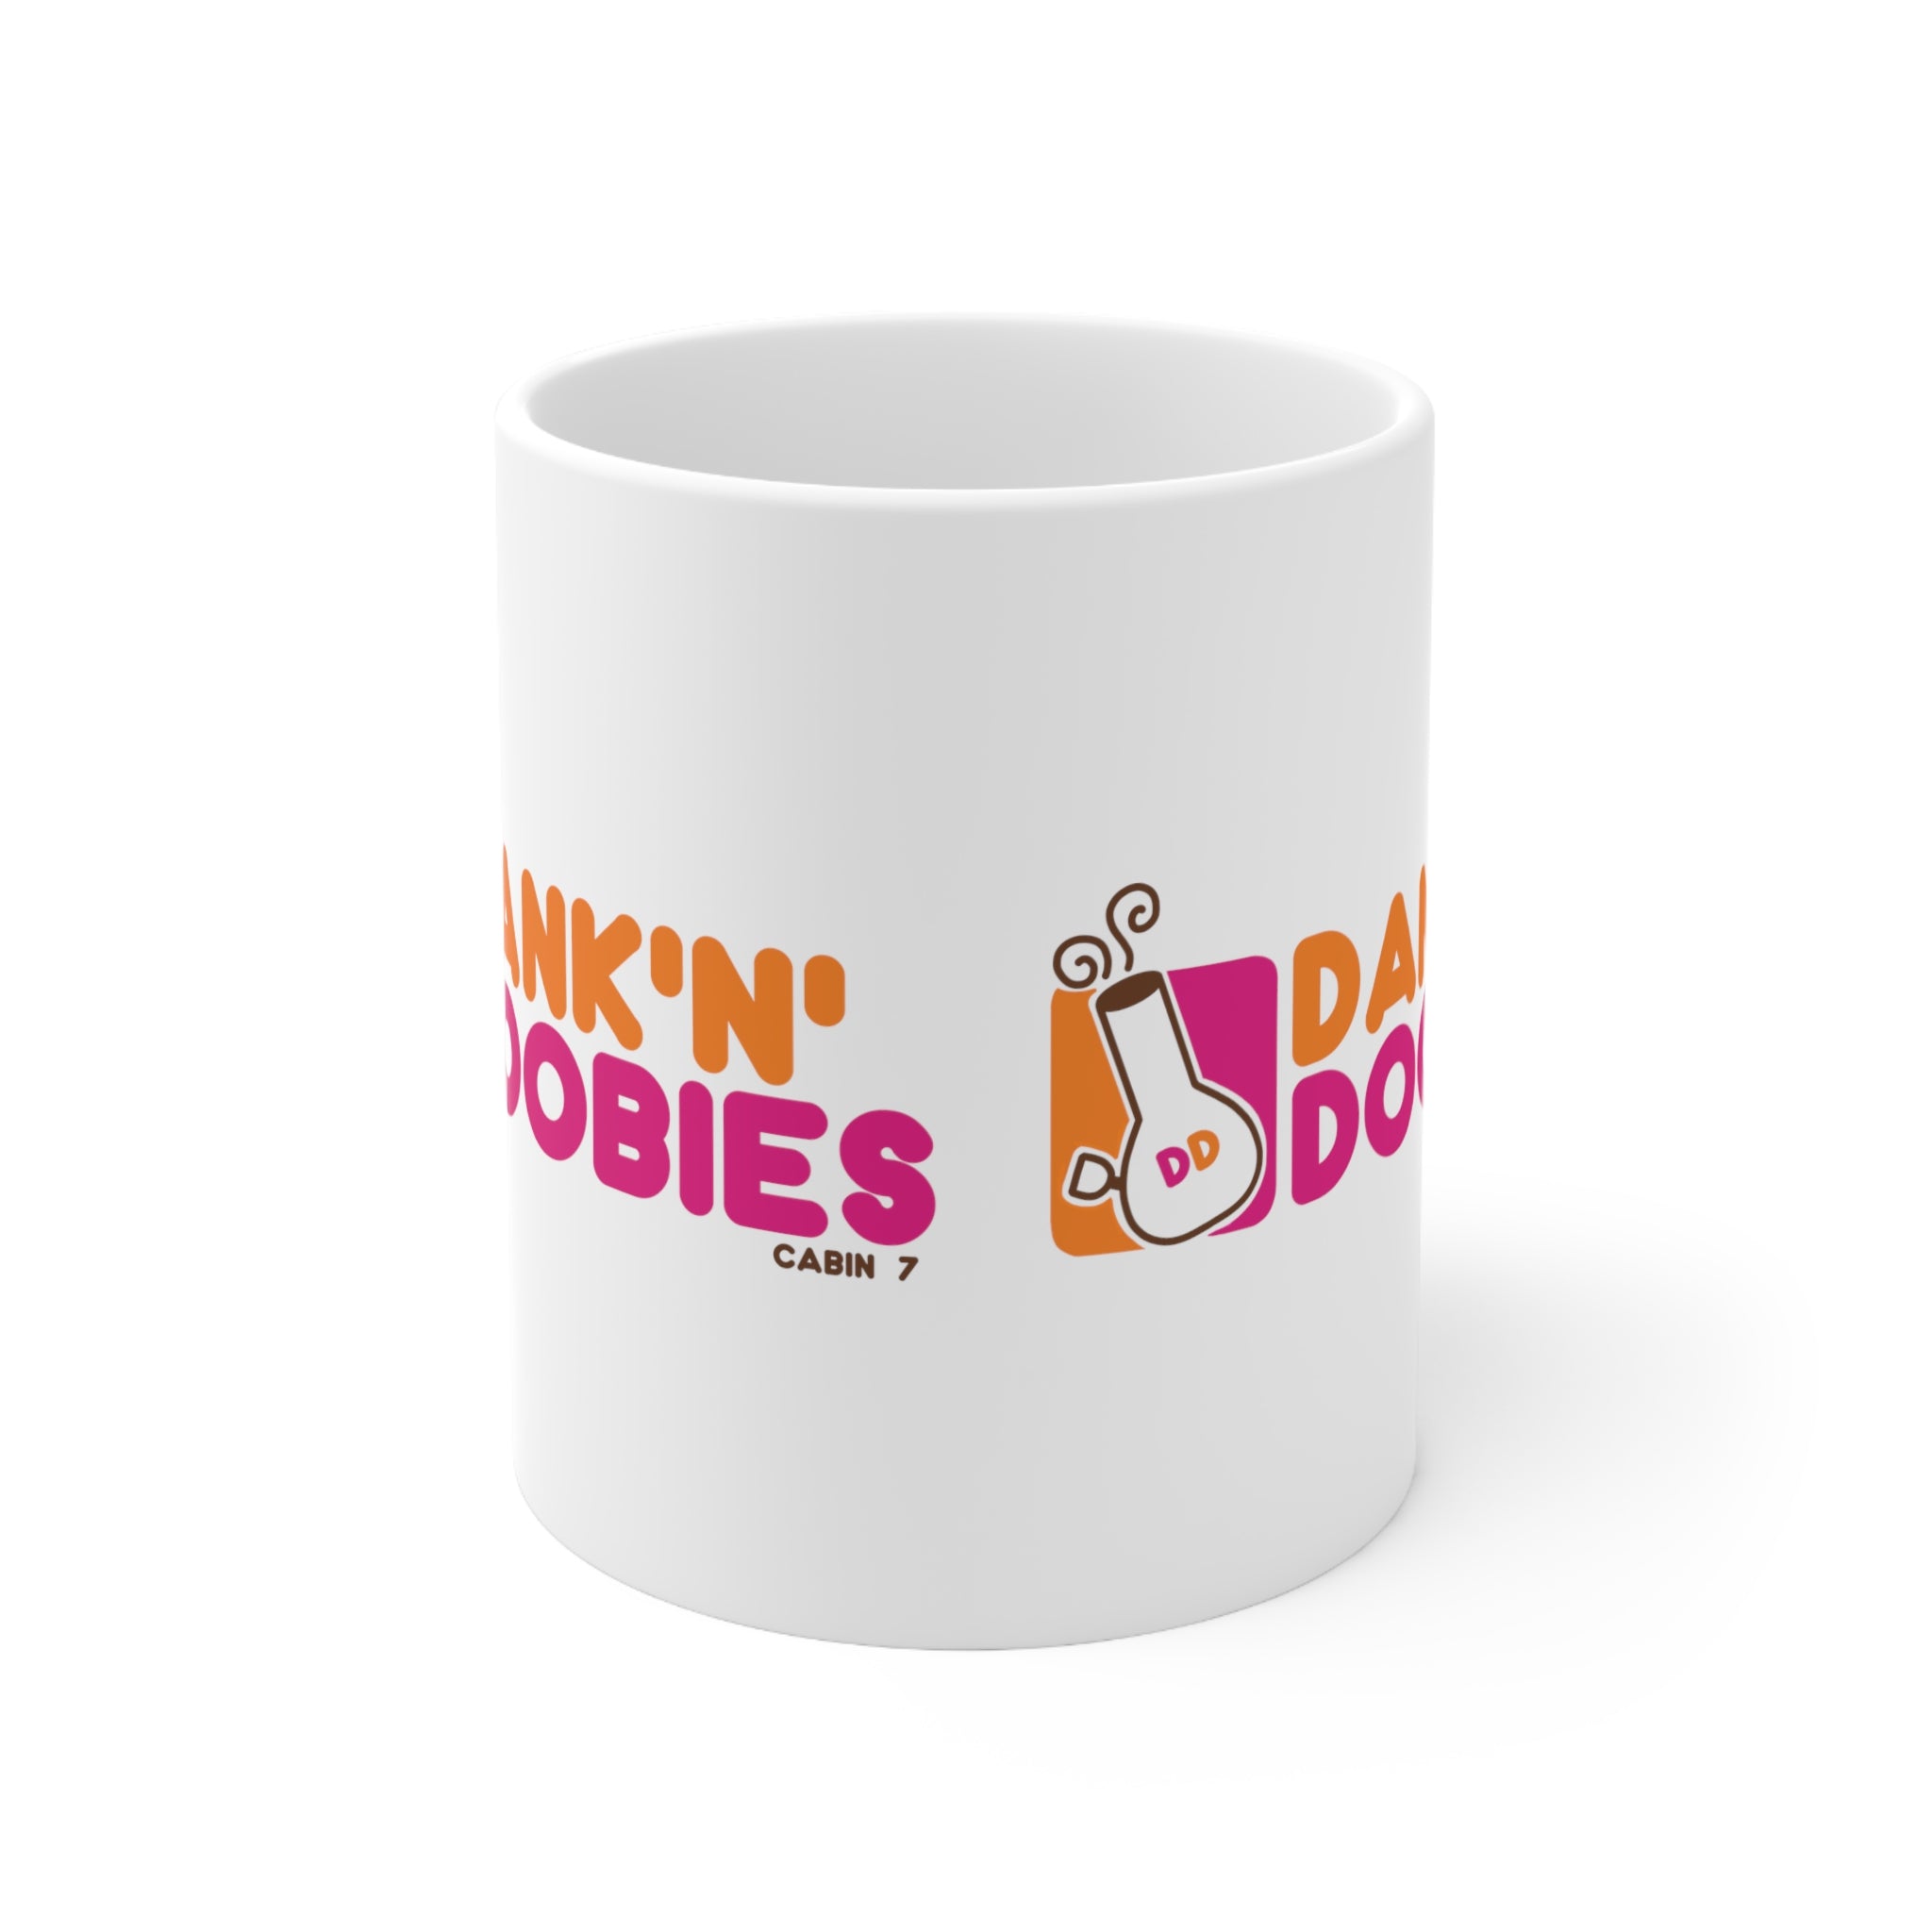 Dank'N'Doobies Mug